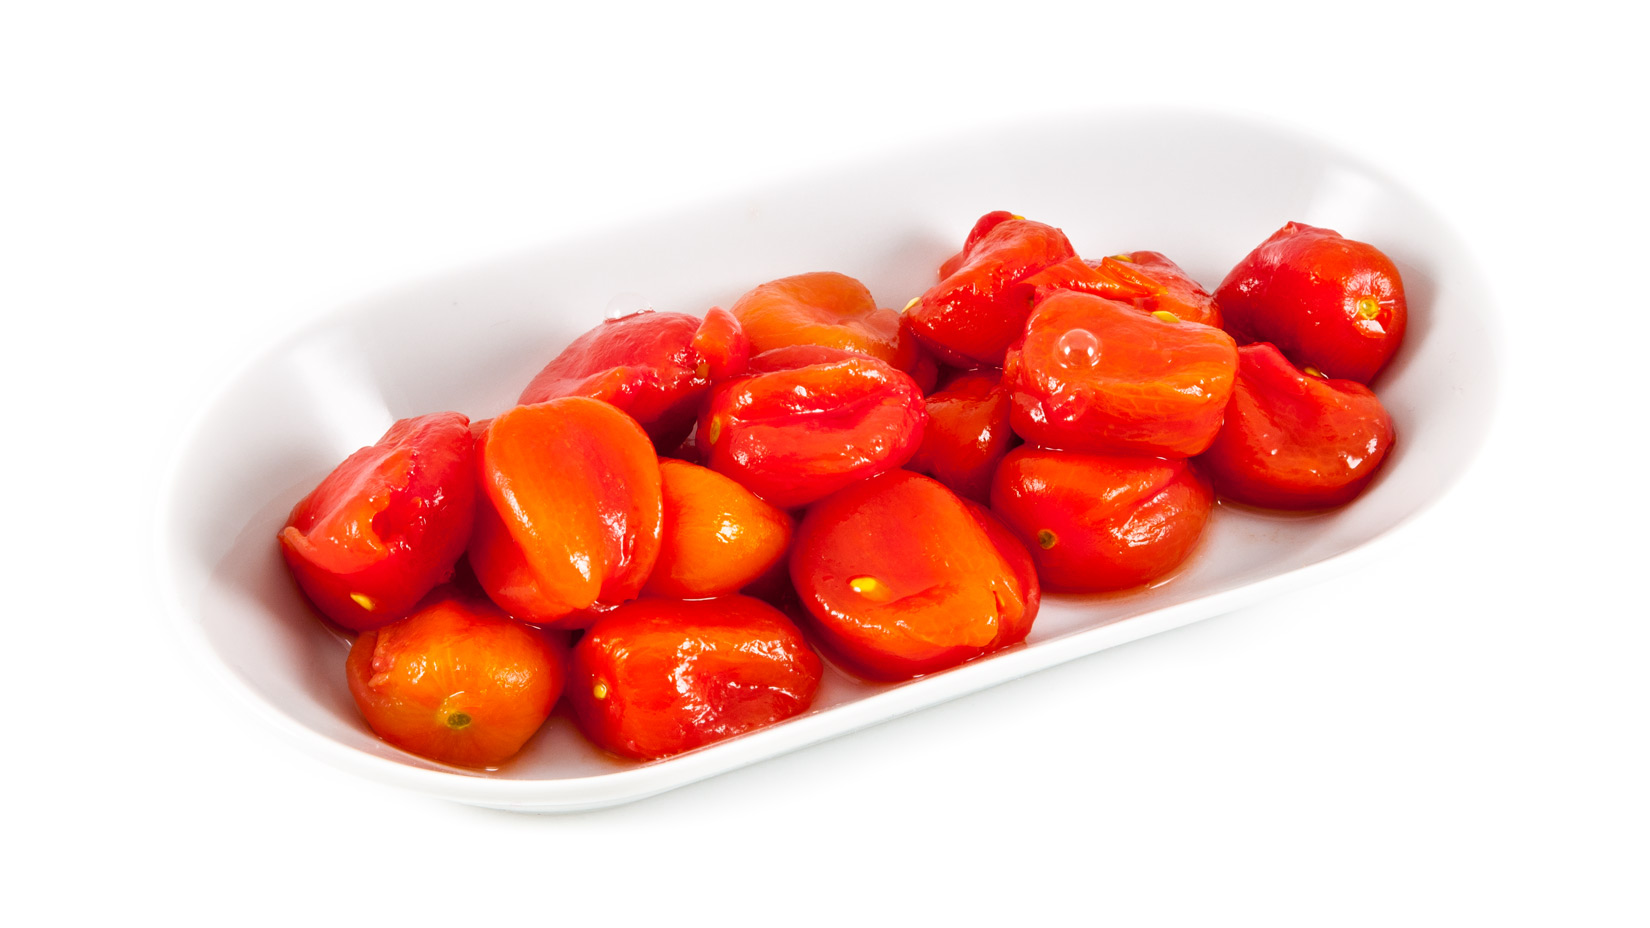 Po spaření každé rajče sloupněte z kůže a vymačkejte šťávu i semínka